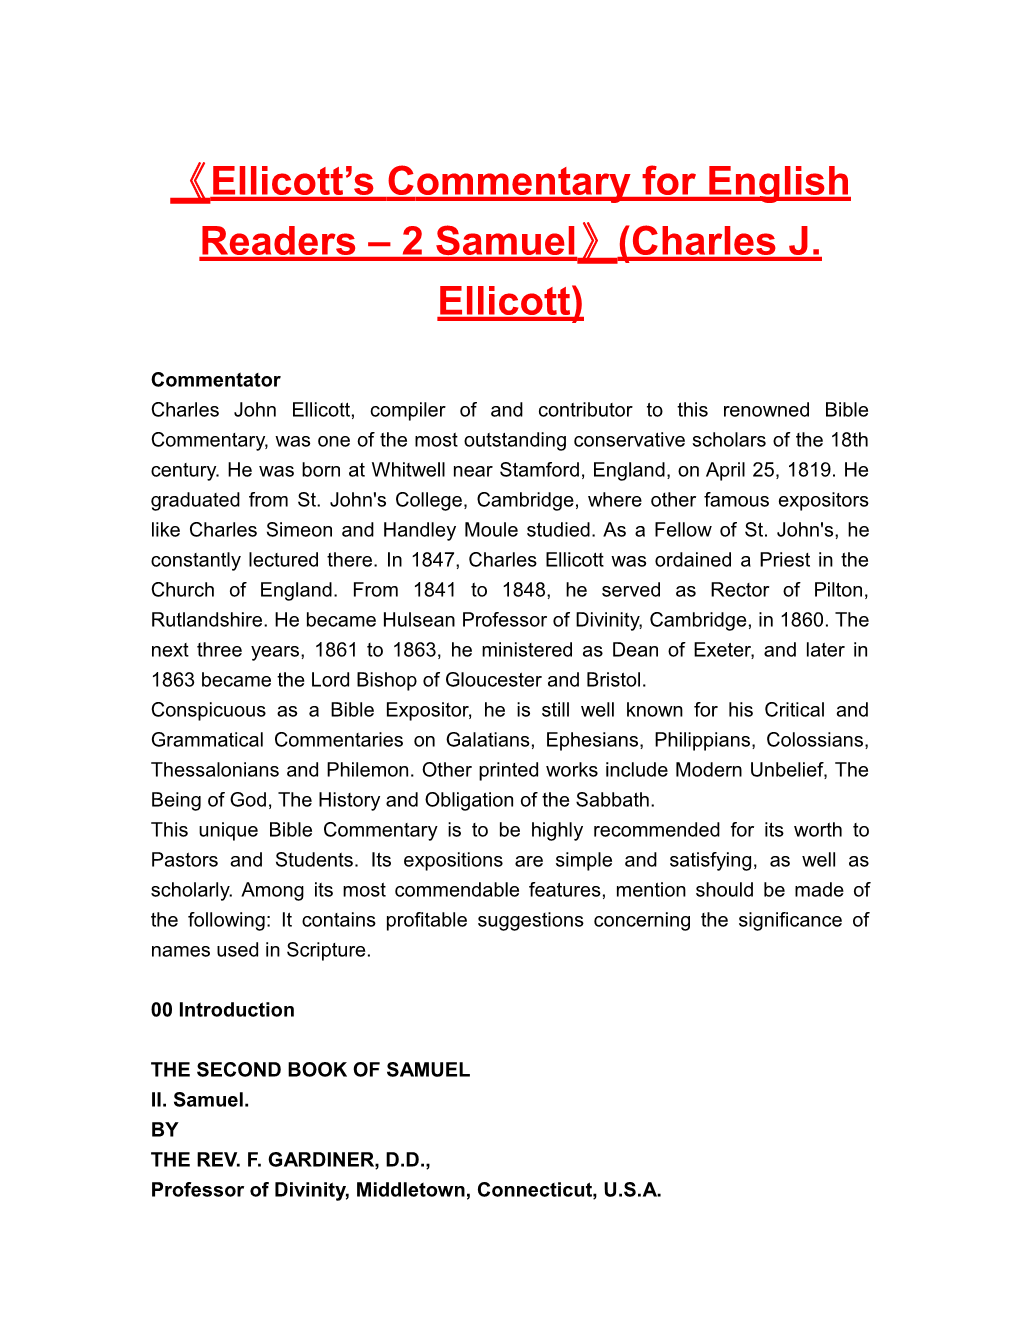 Ellicott S Commentary for English Readers 2 Samuel (Charles J. Ellicott)